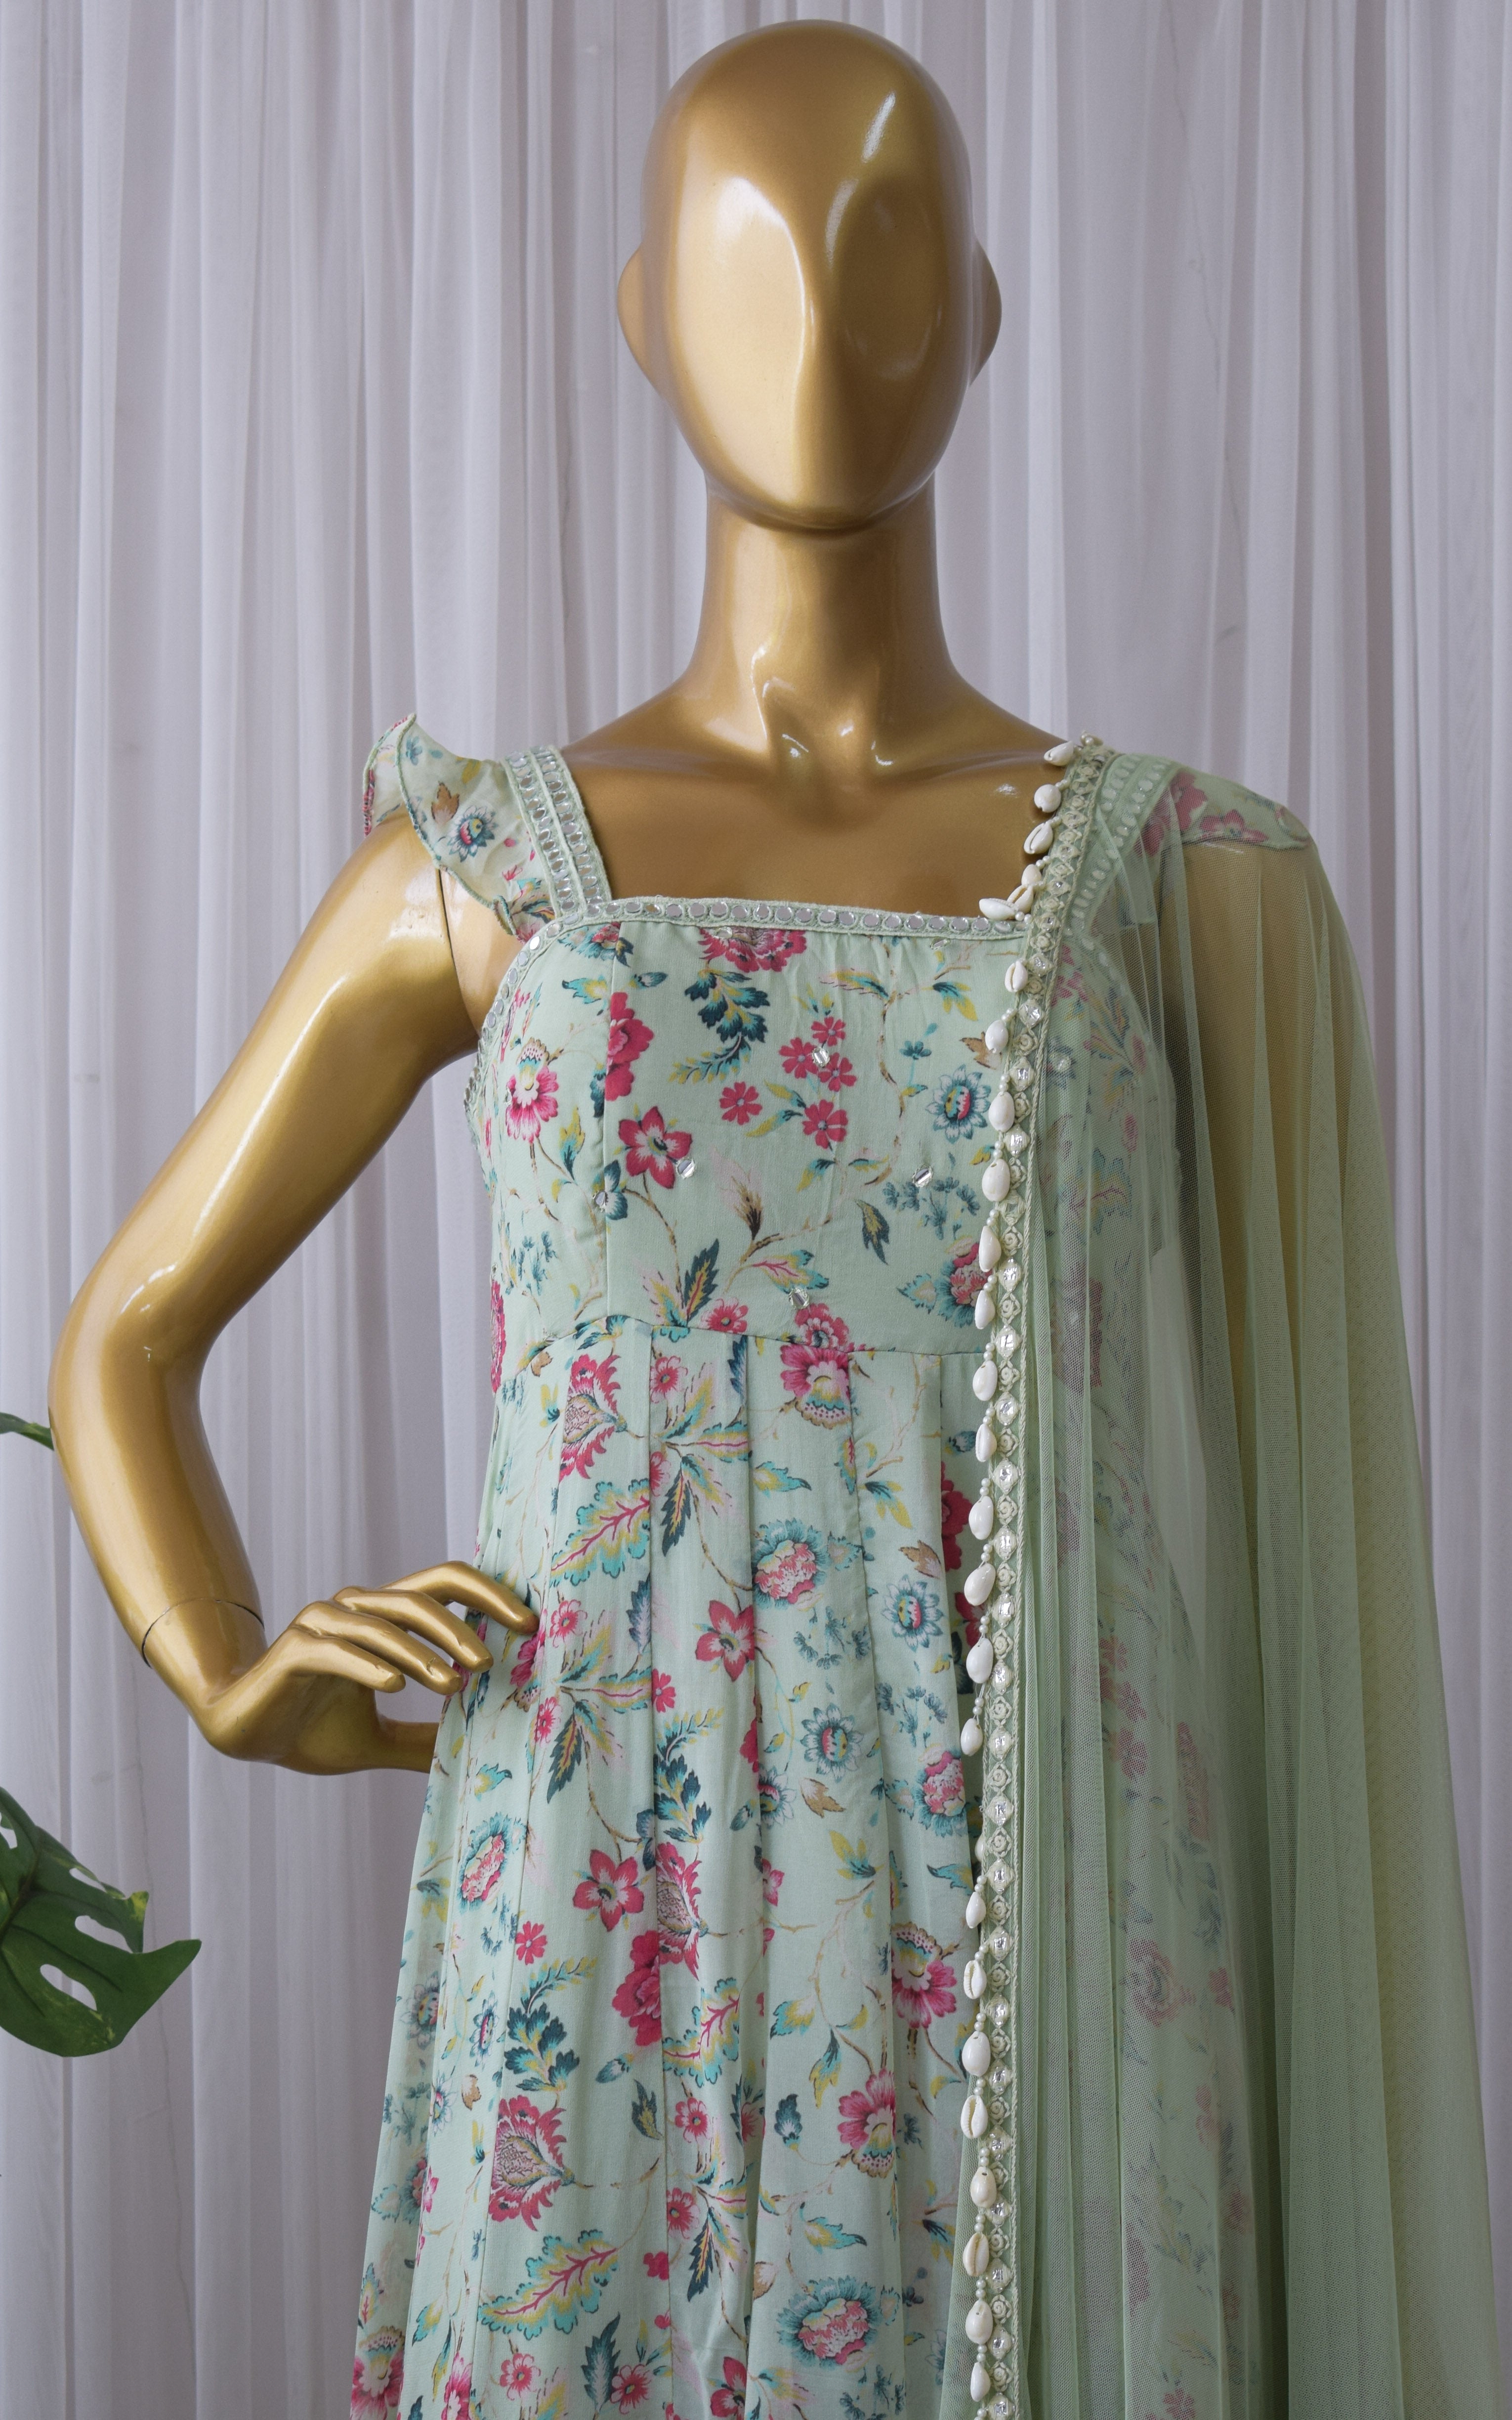 Riya Nagpal Laurel Green Floral Printed Georgette Mirrorwork Anarkali